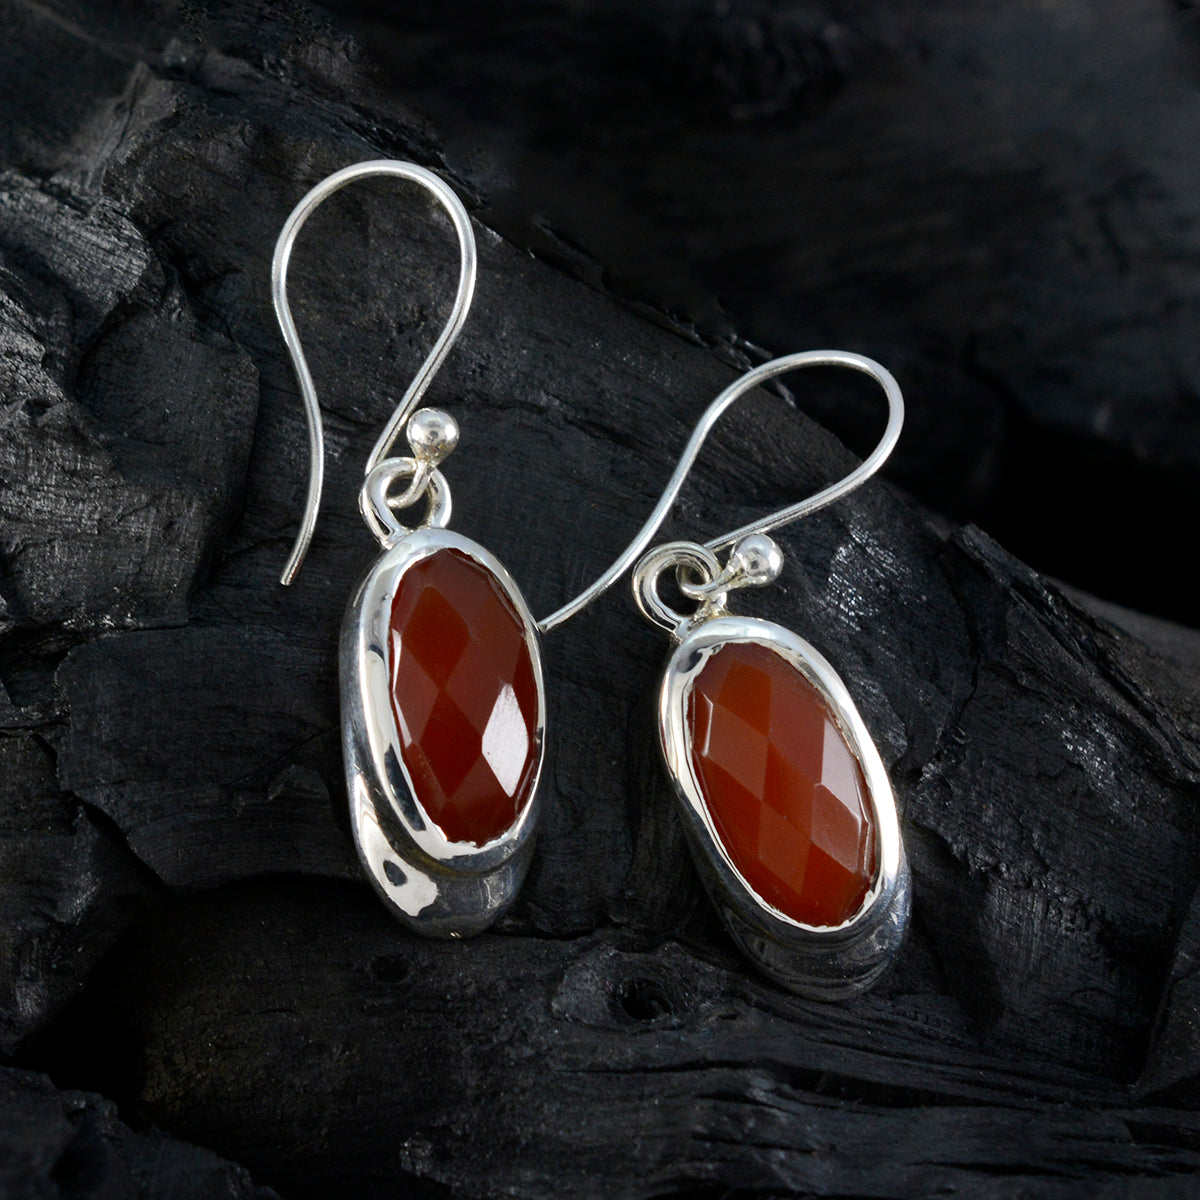 Riyo Drop-Dead Prachtige Sterling Zilveren Oorbel Voor Vrouwen Rode Onyx Oorbel Bezel Setting Rode Oorbel Dangle Earring